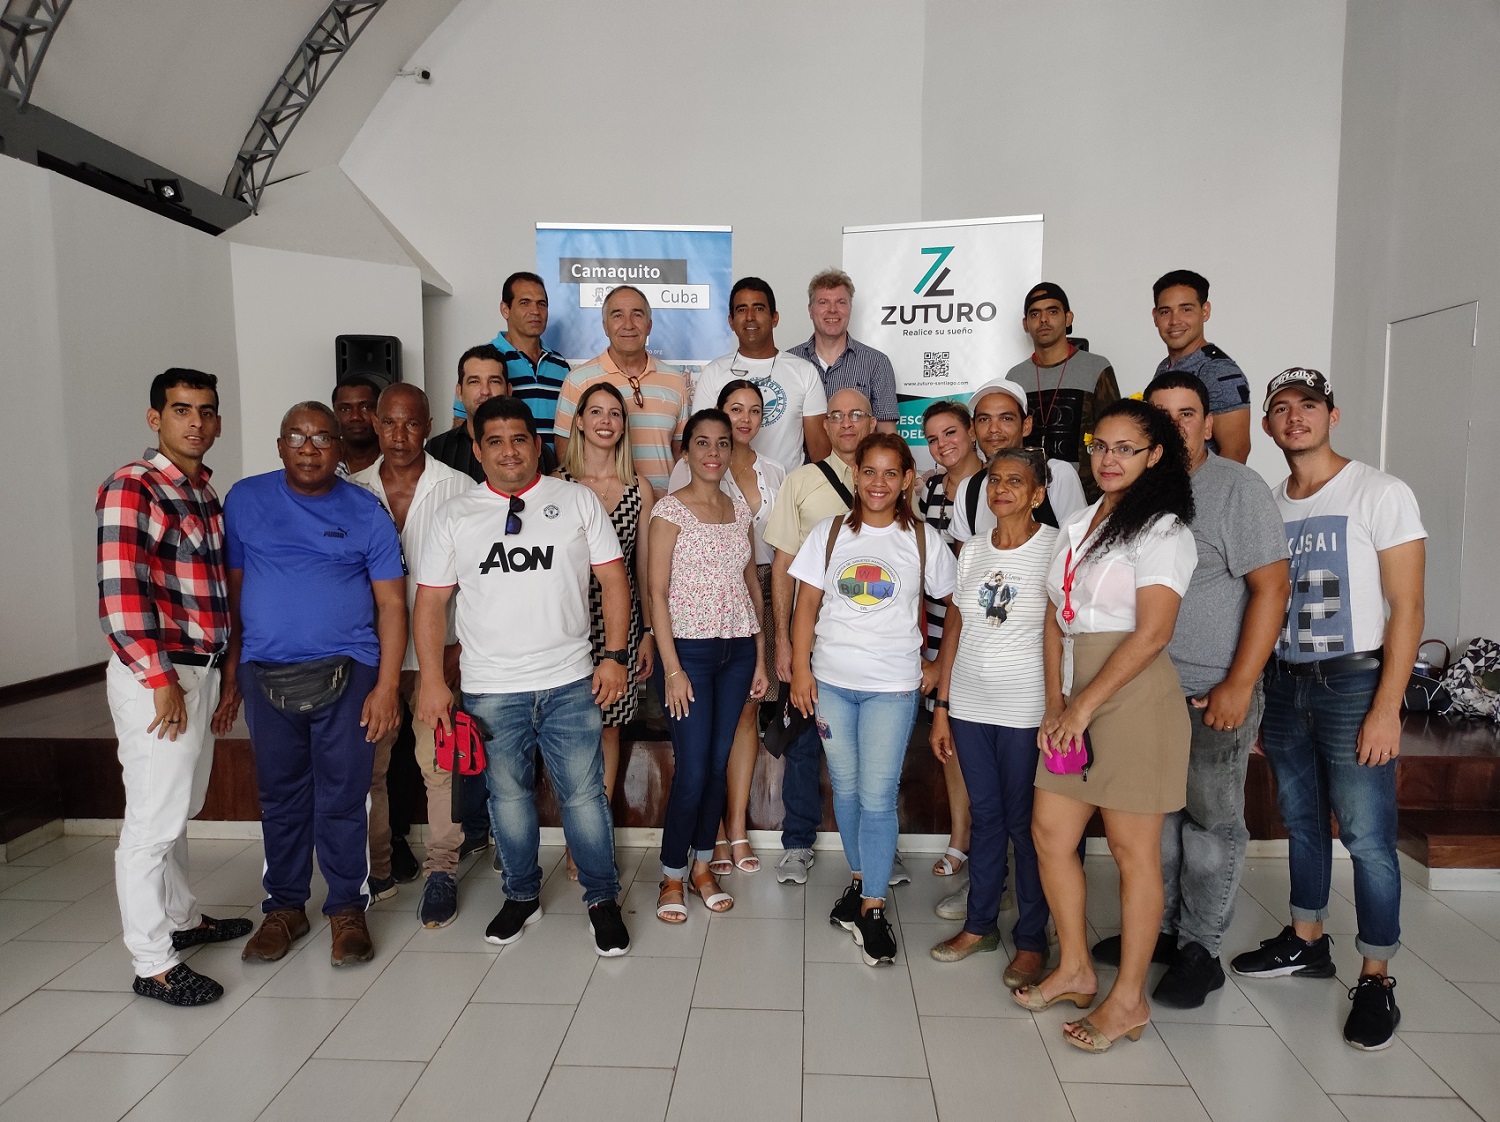 Förderung von Jungunternehmerinnen und –unternehmern in Santiago de Cuba